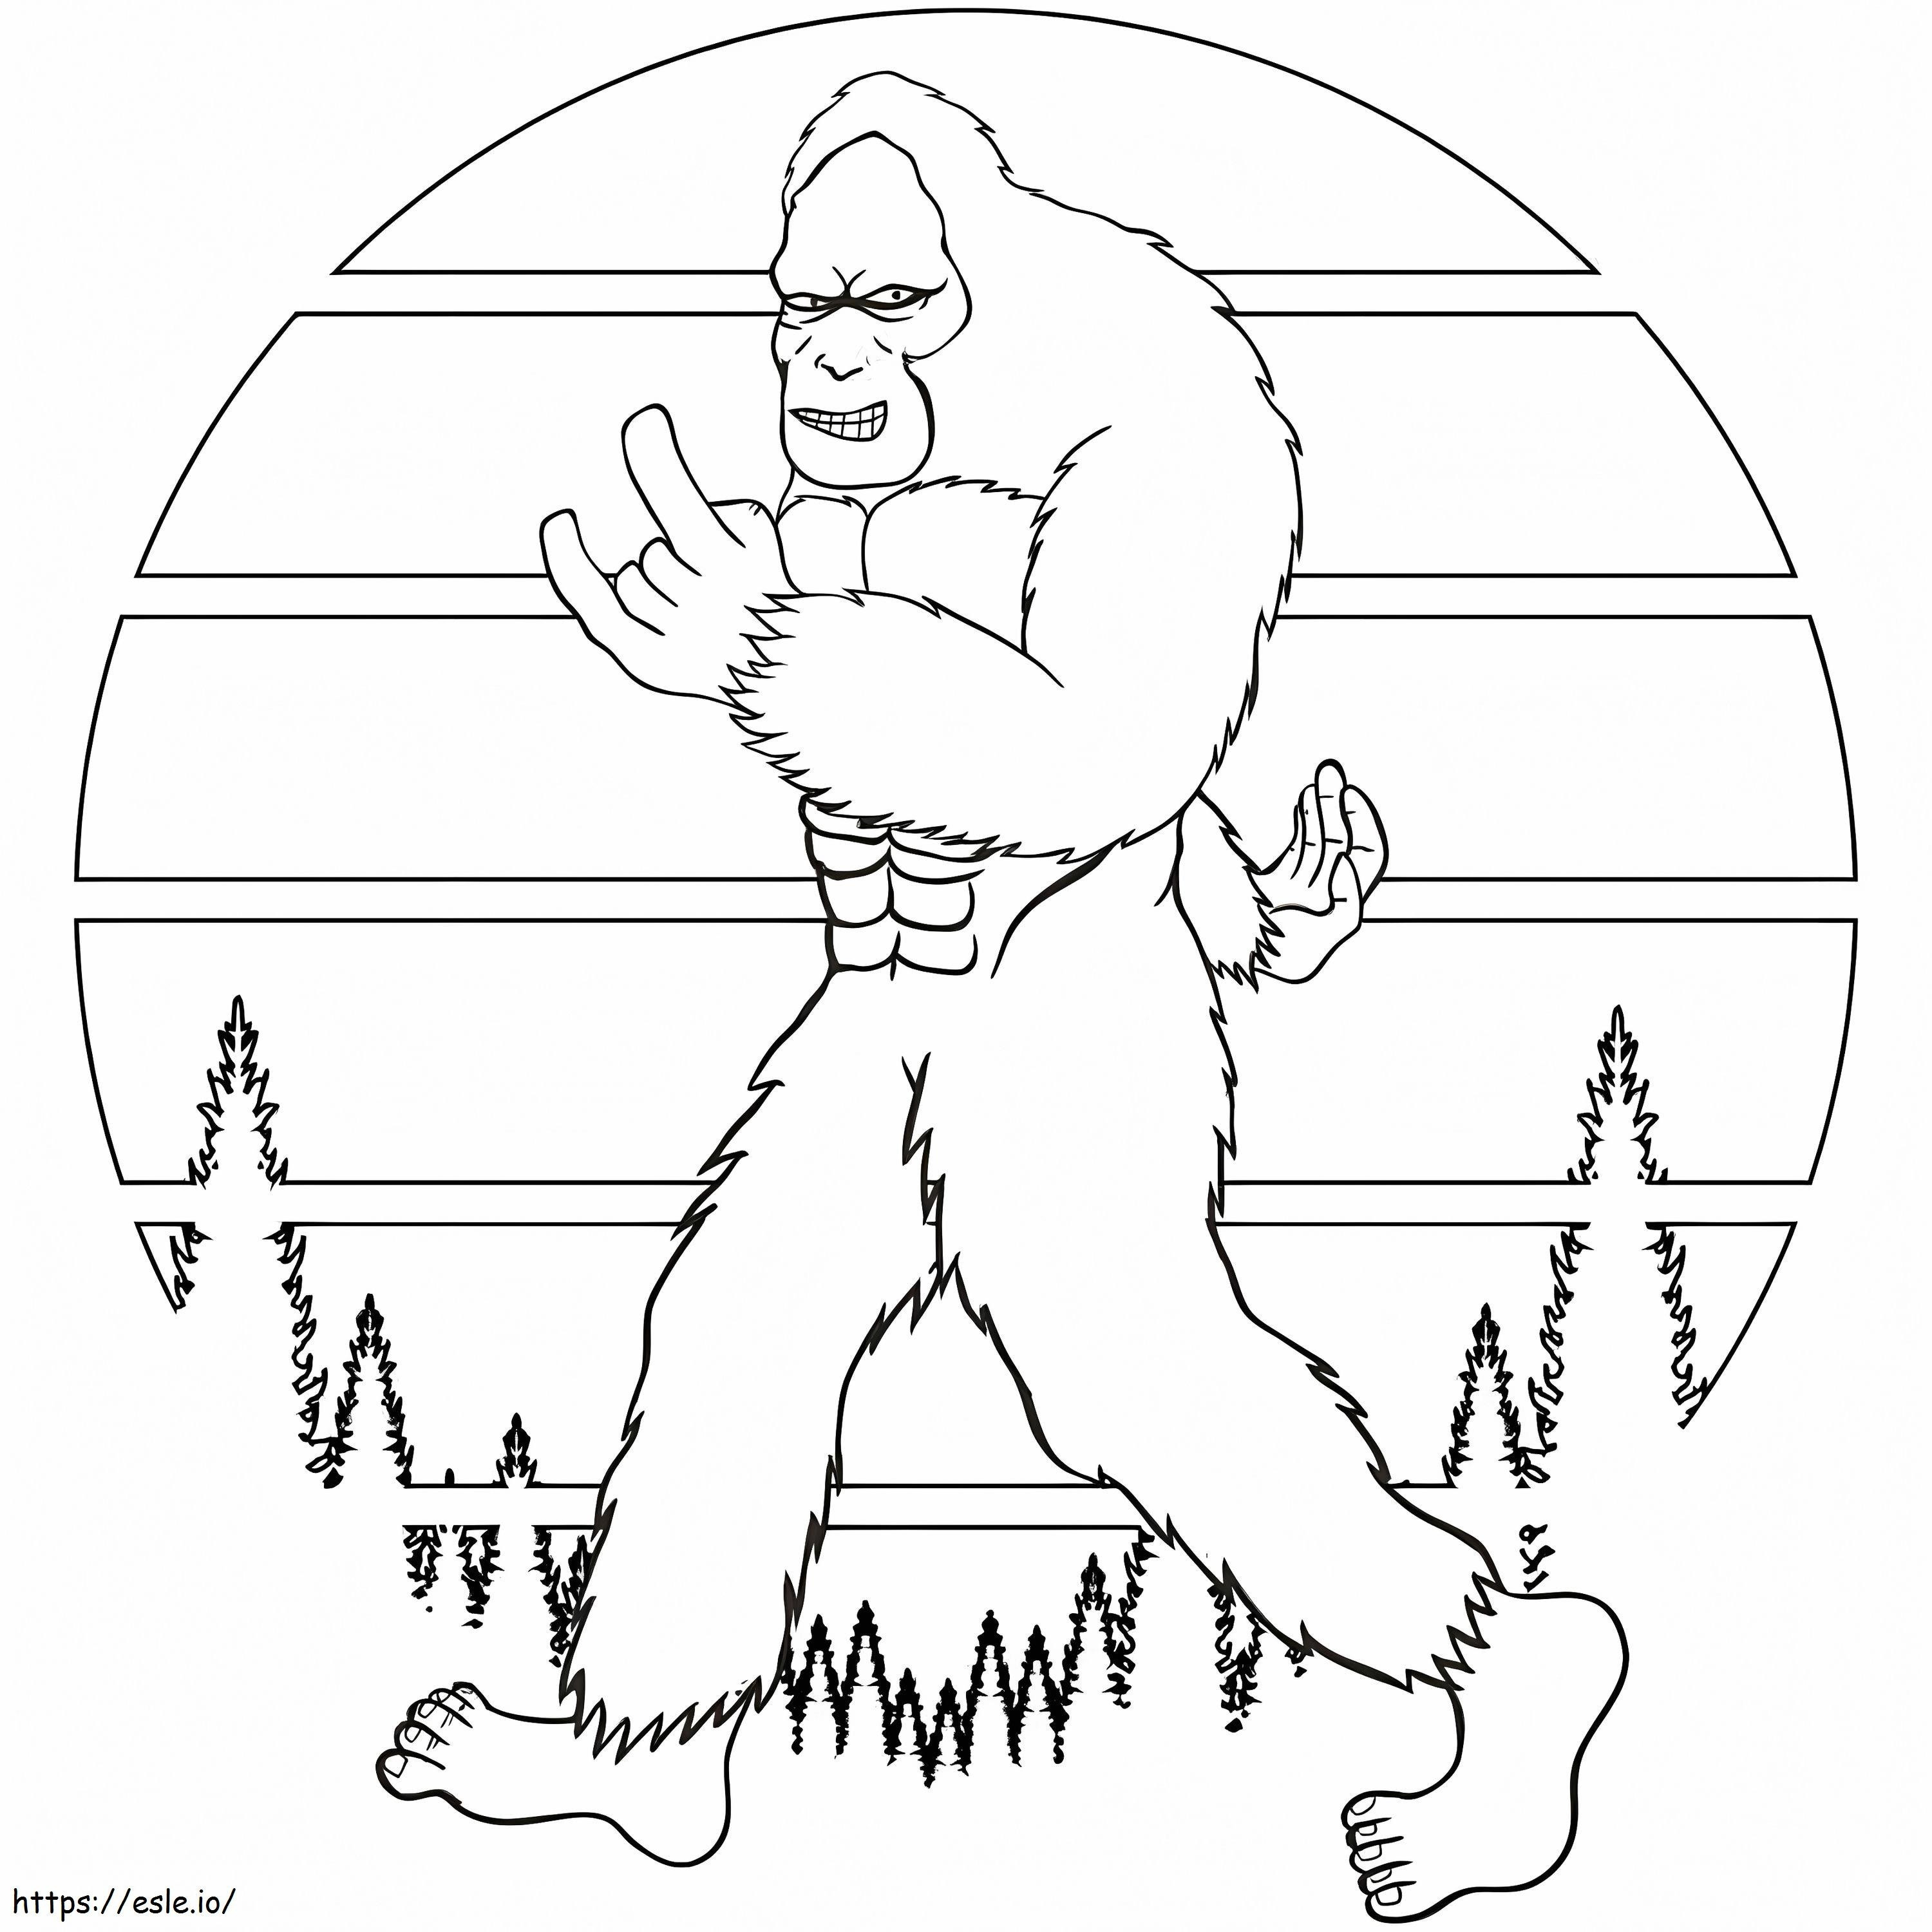 Walking Bigfoot coloring page